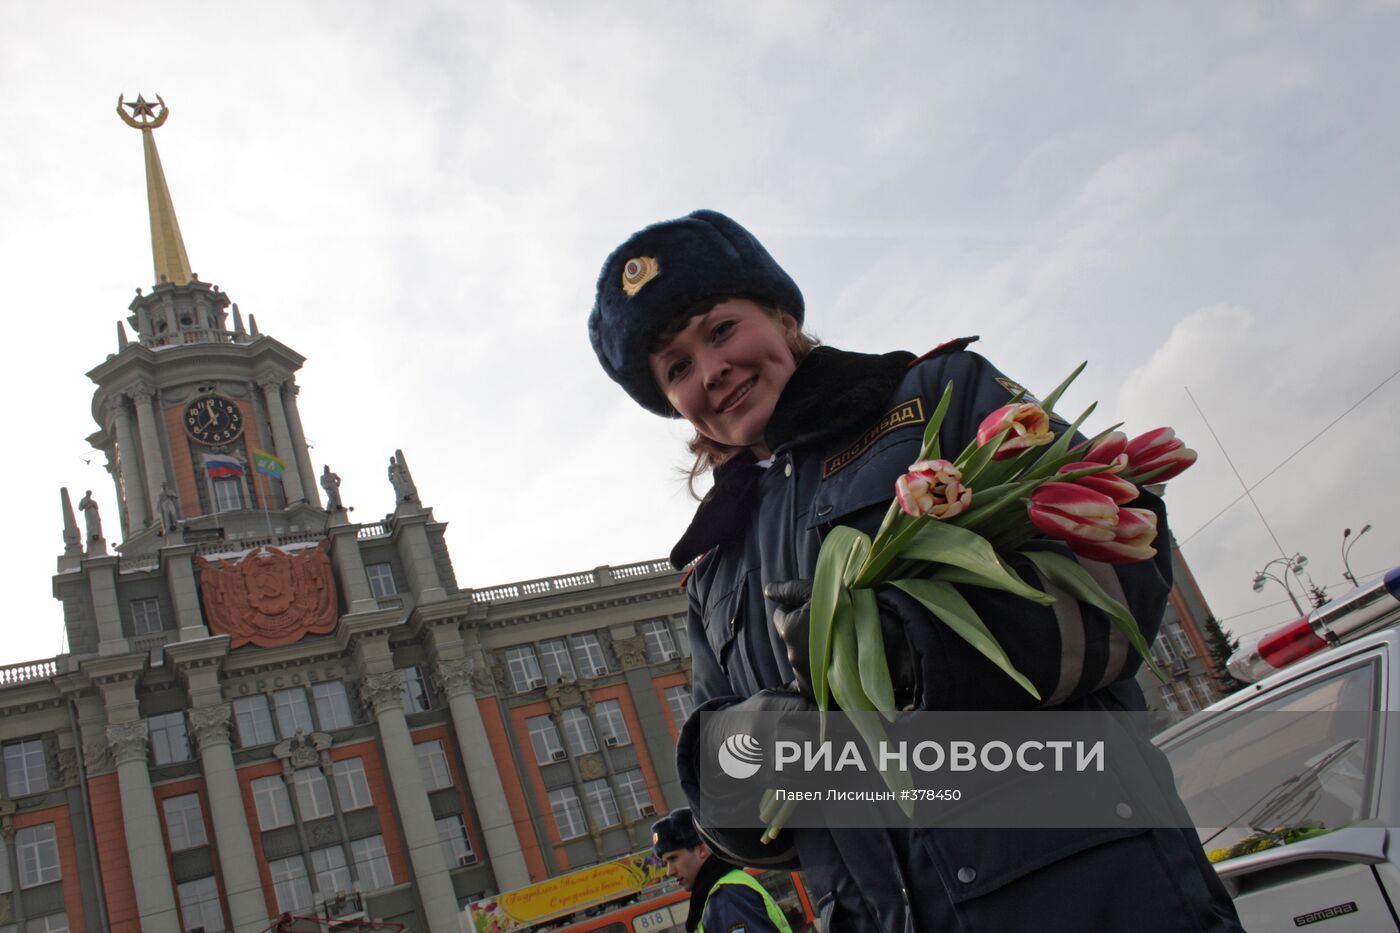 Сотрудники ГИБДД Екатеринбурга поздравили женщин-водителей